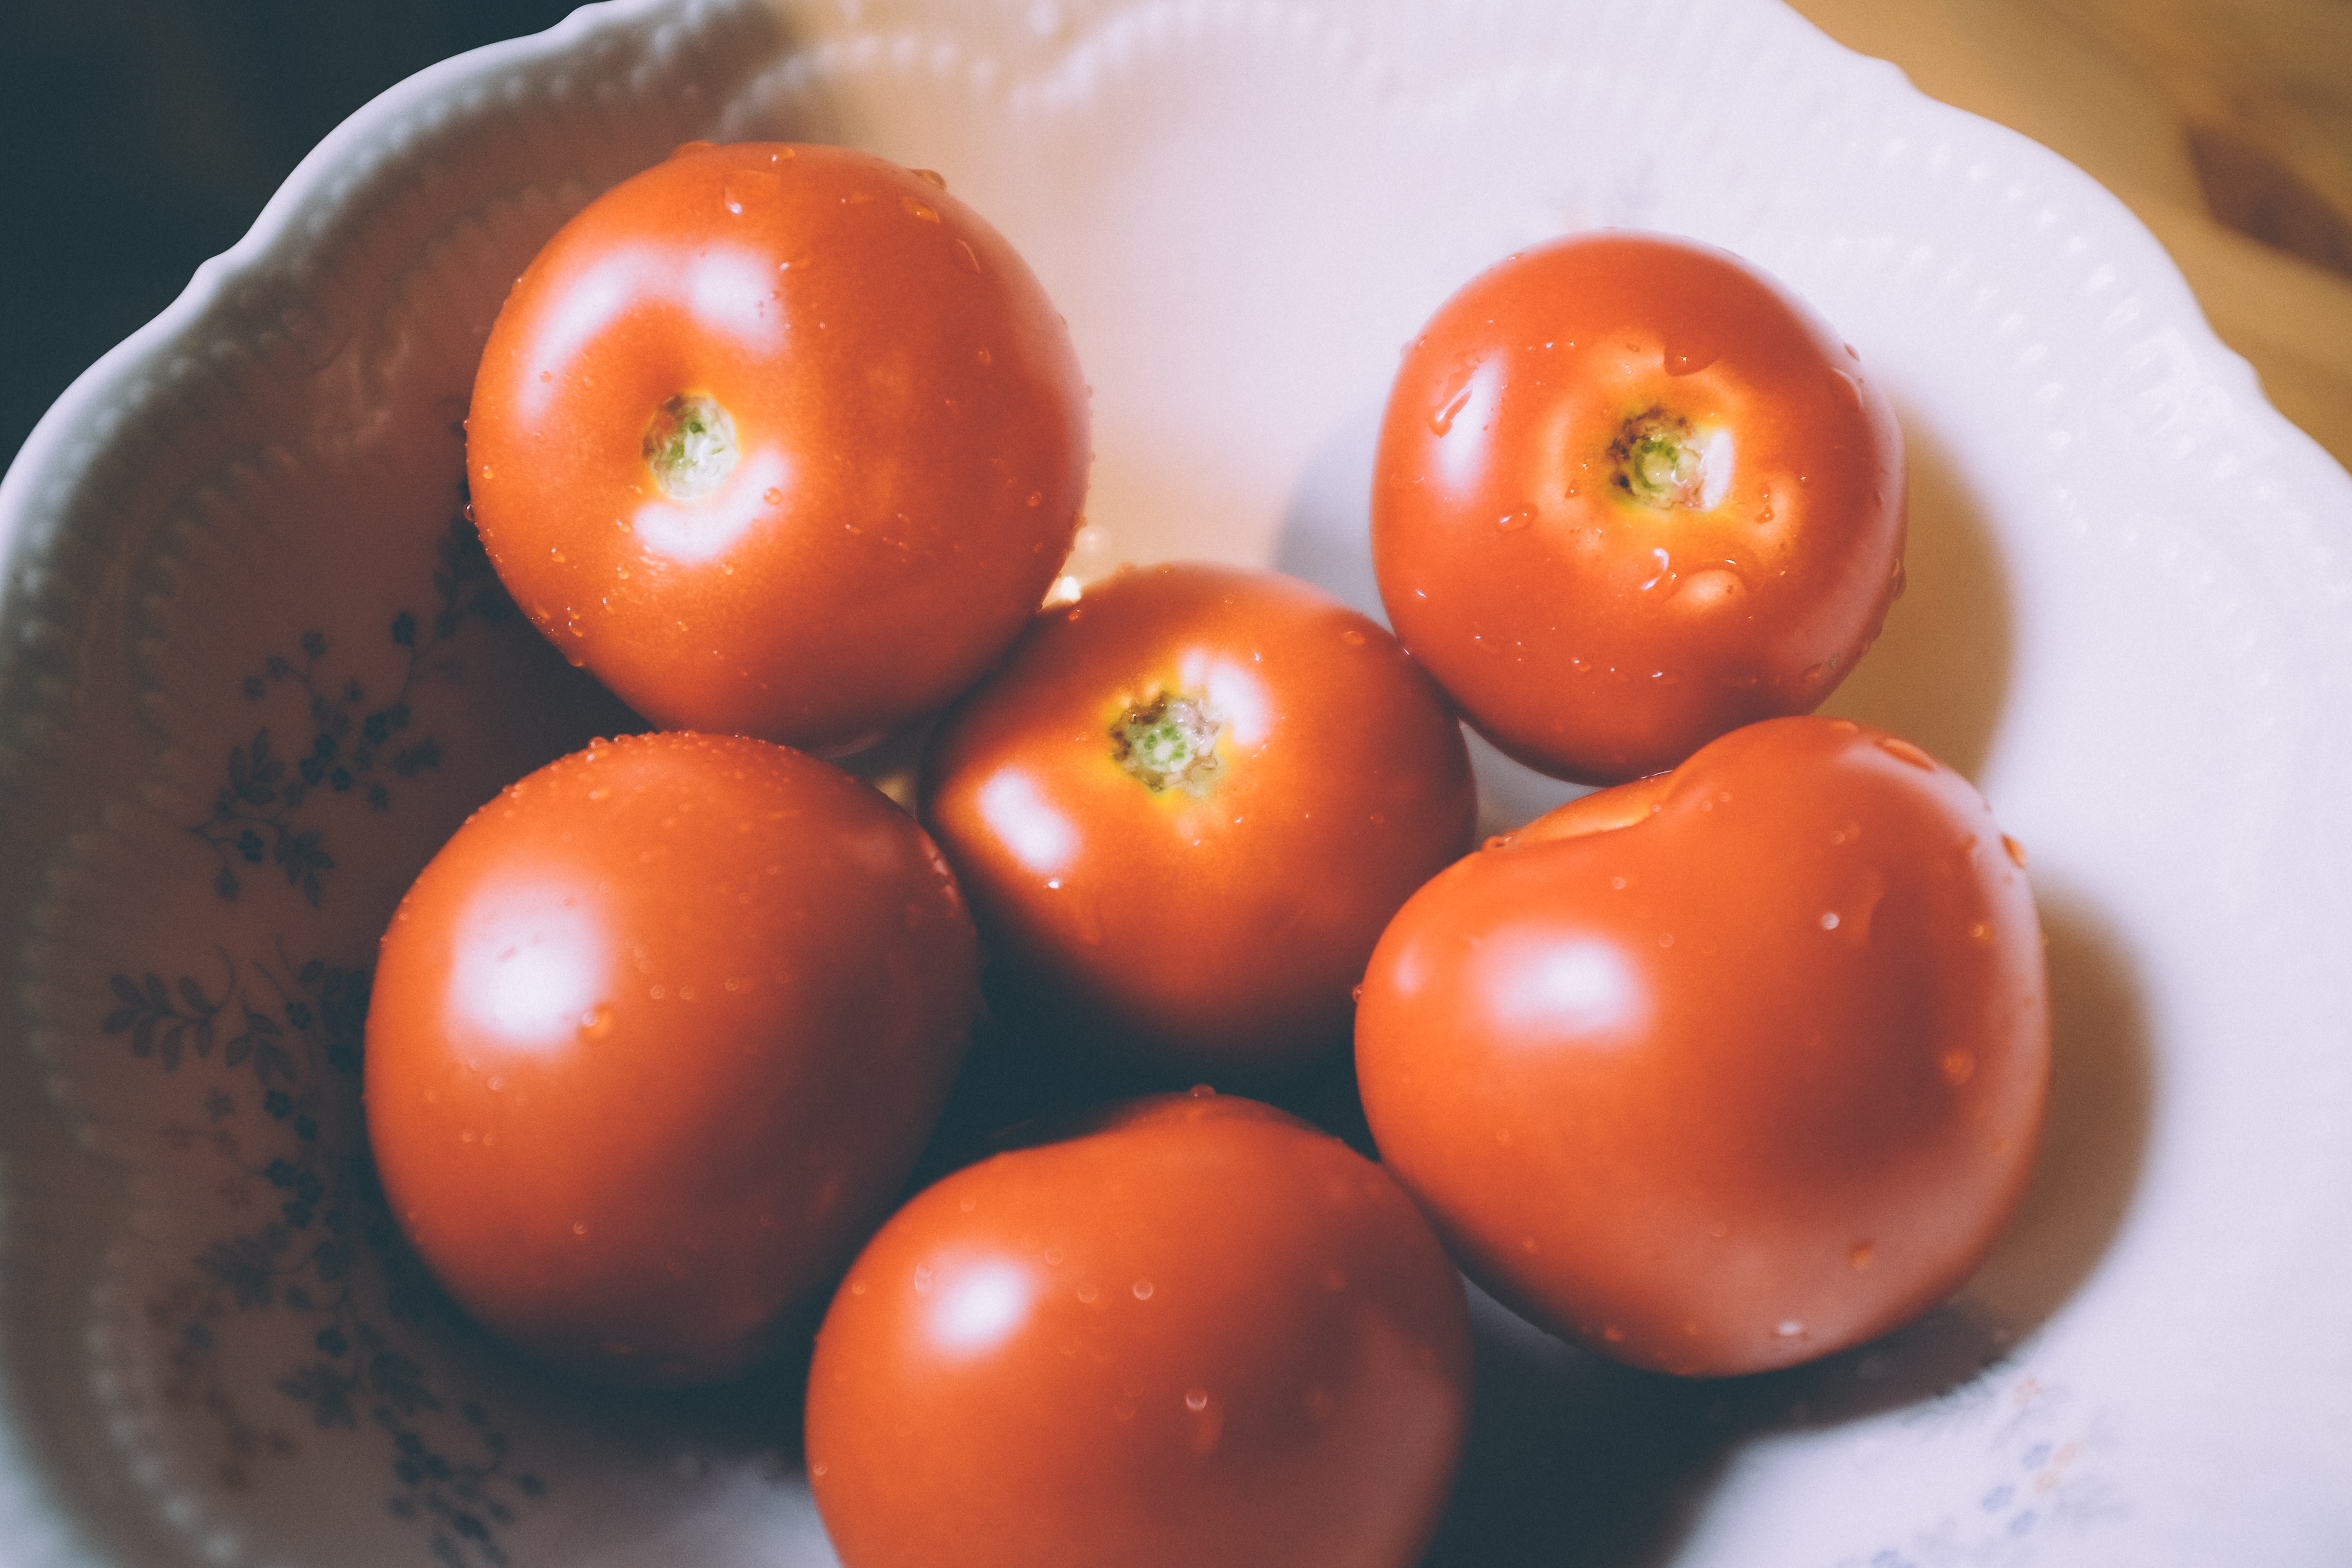 Comment récupérer les graines de tomates pour les utiliser dans le jardin ?